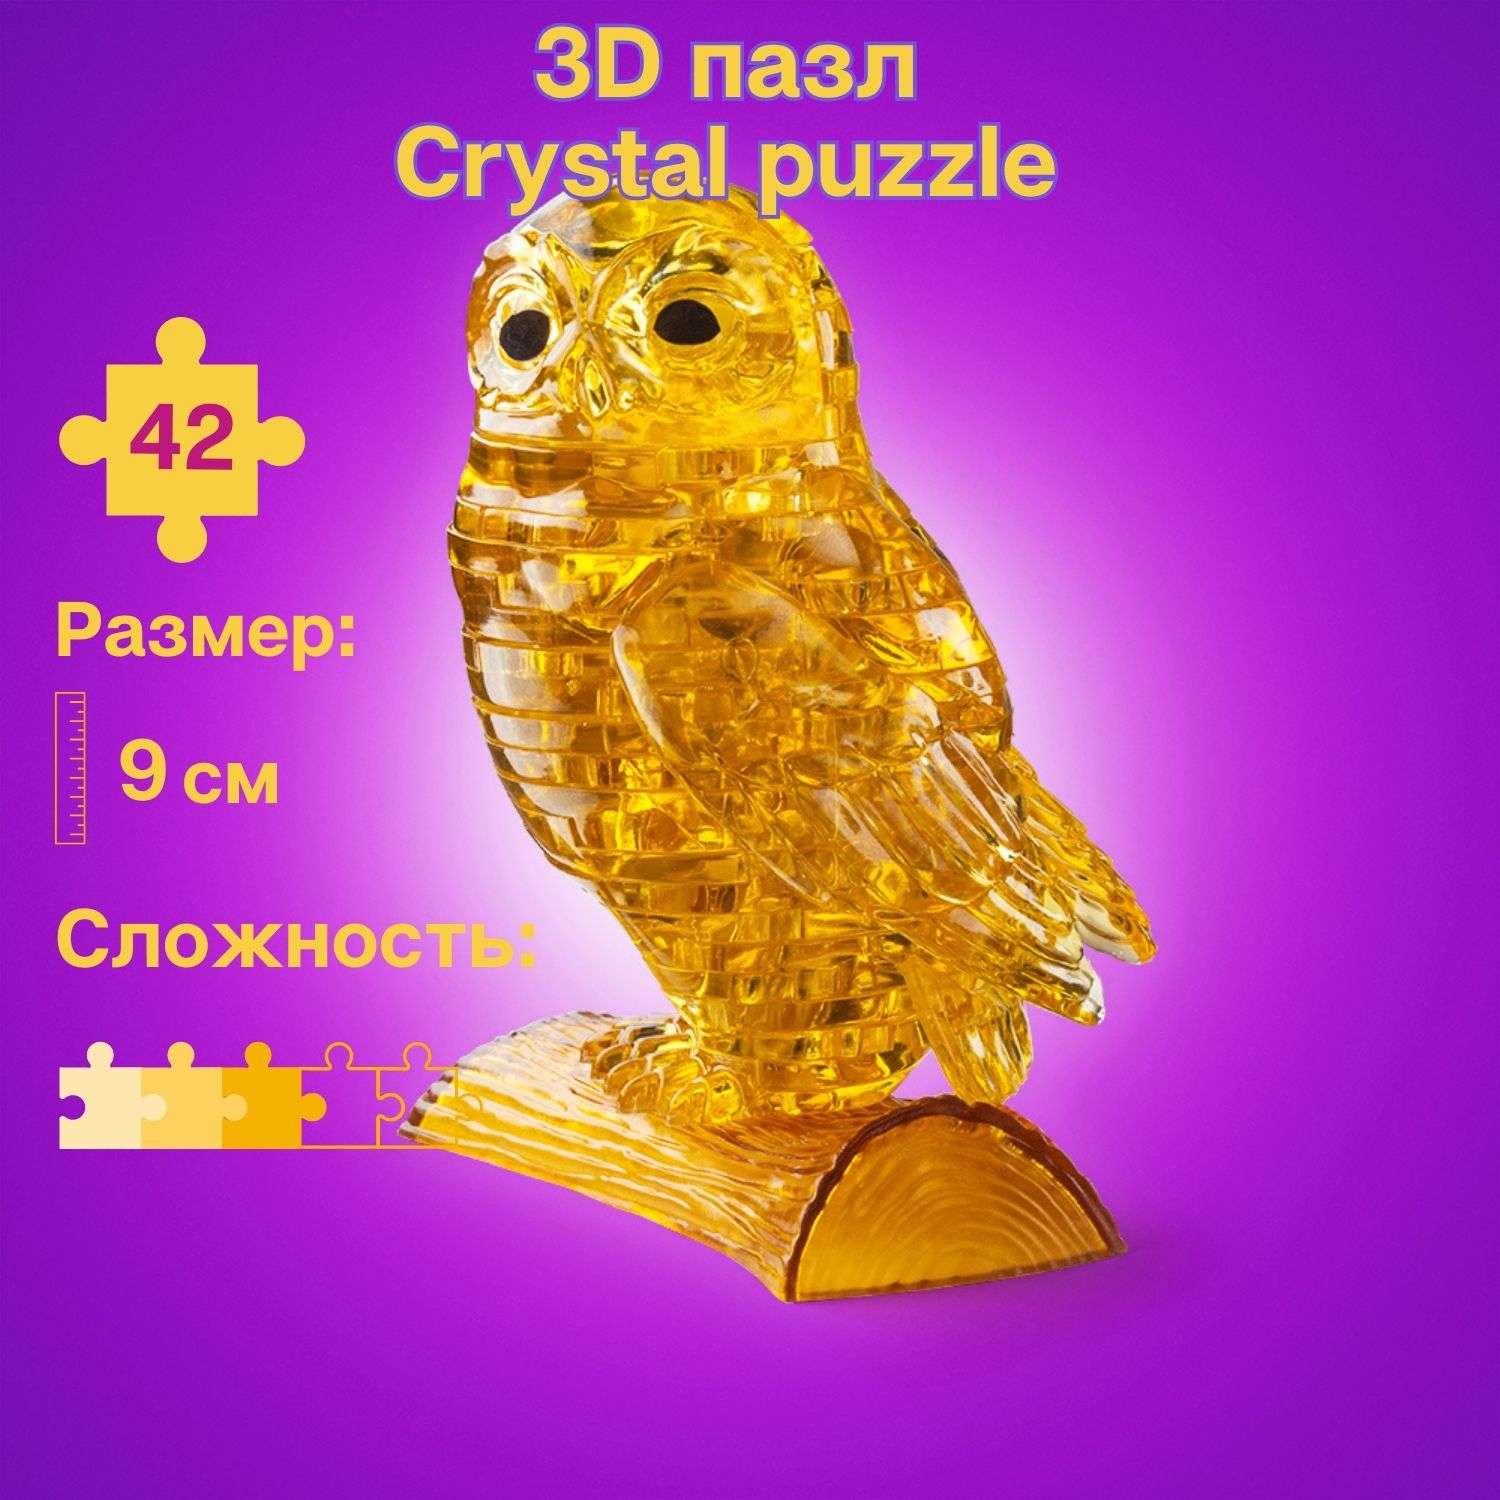 3D-пазл Crystal Puzzle IQ игра для детей кристальная Золотая сова 42 детали - фото 1